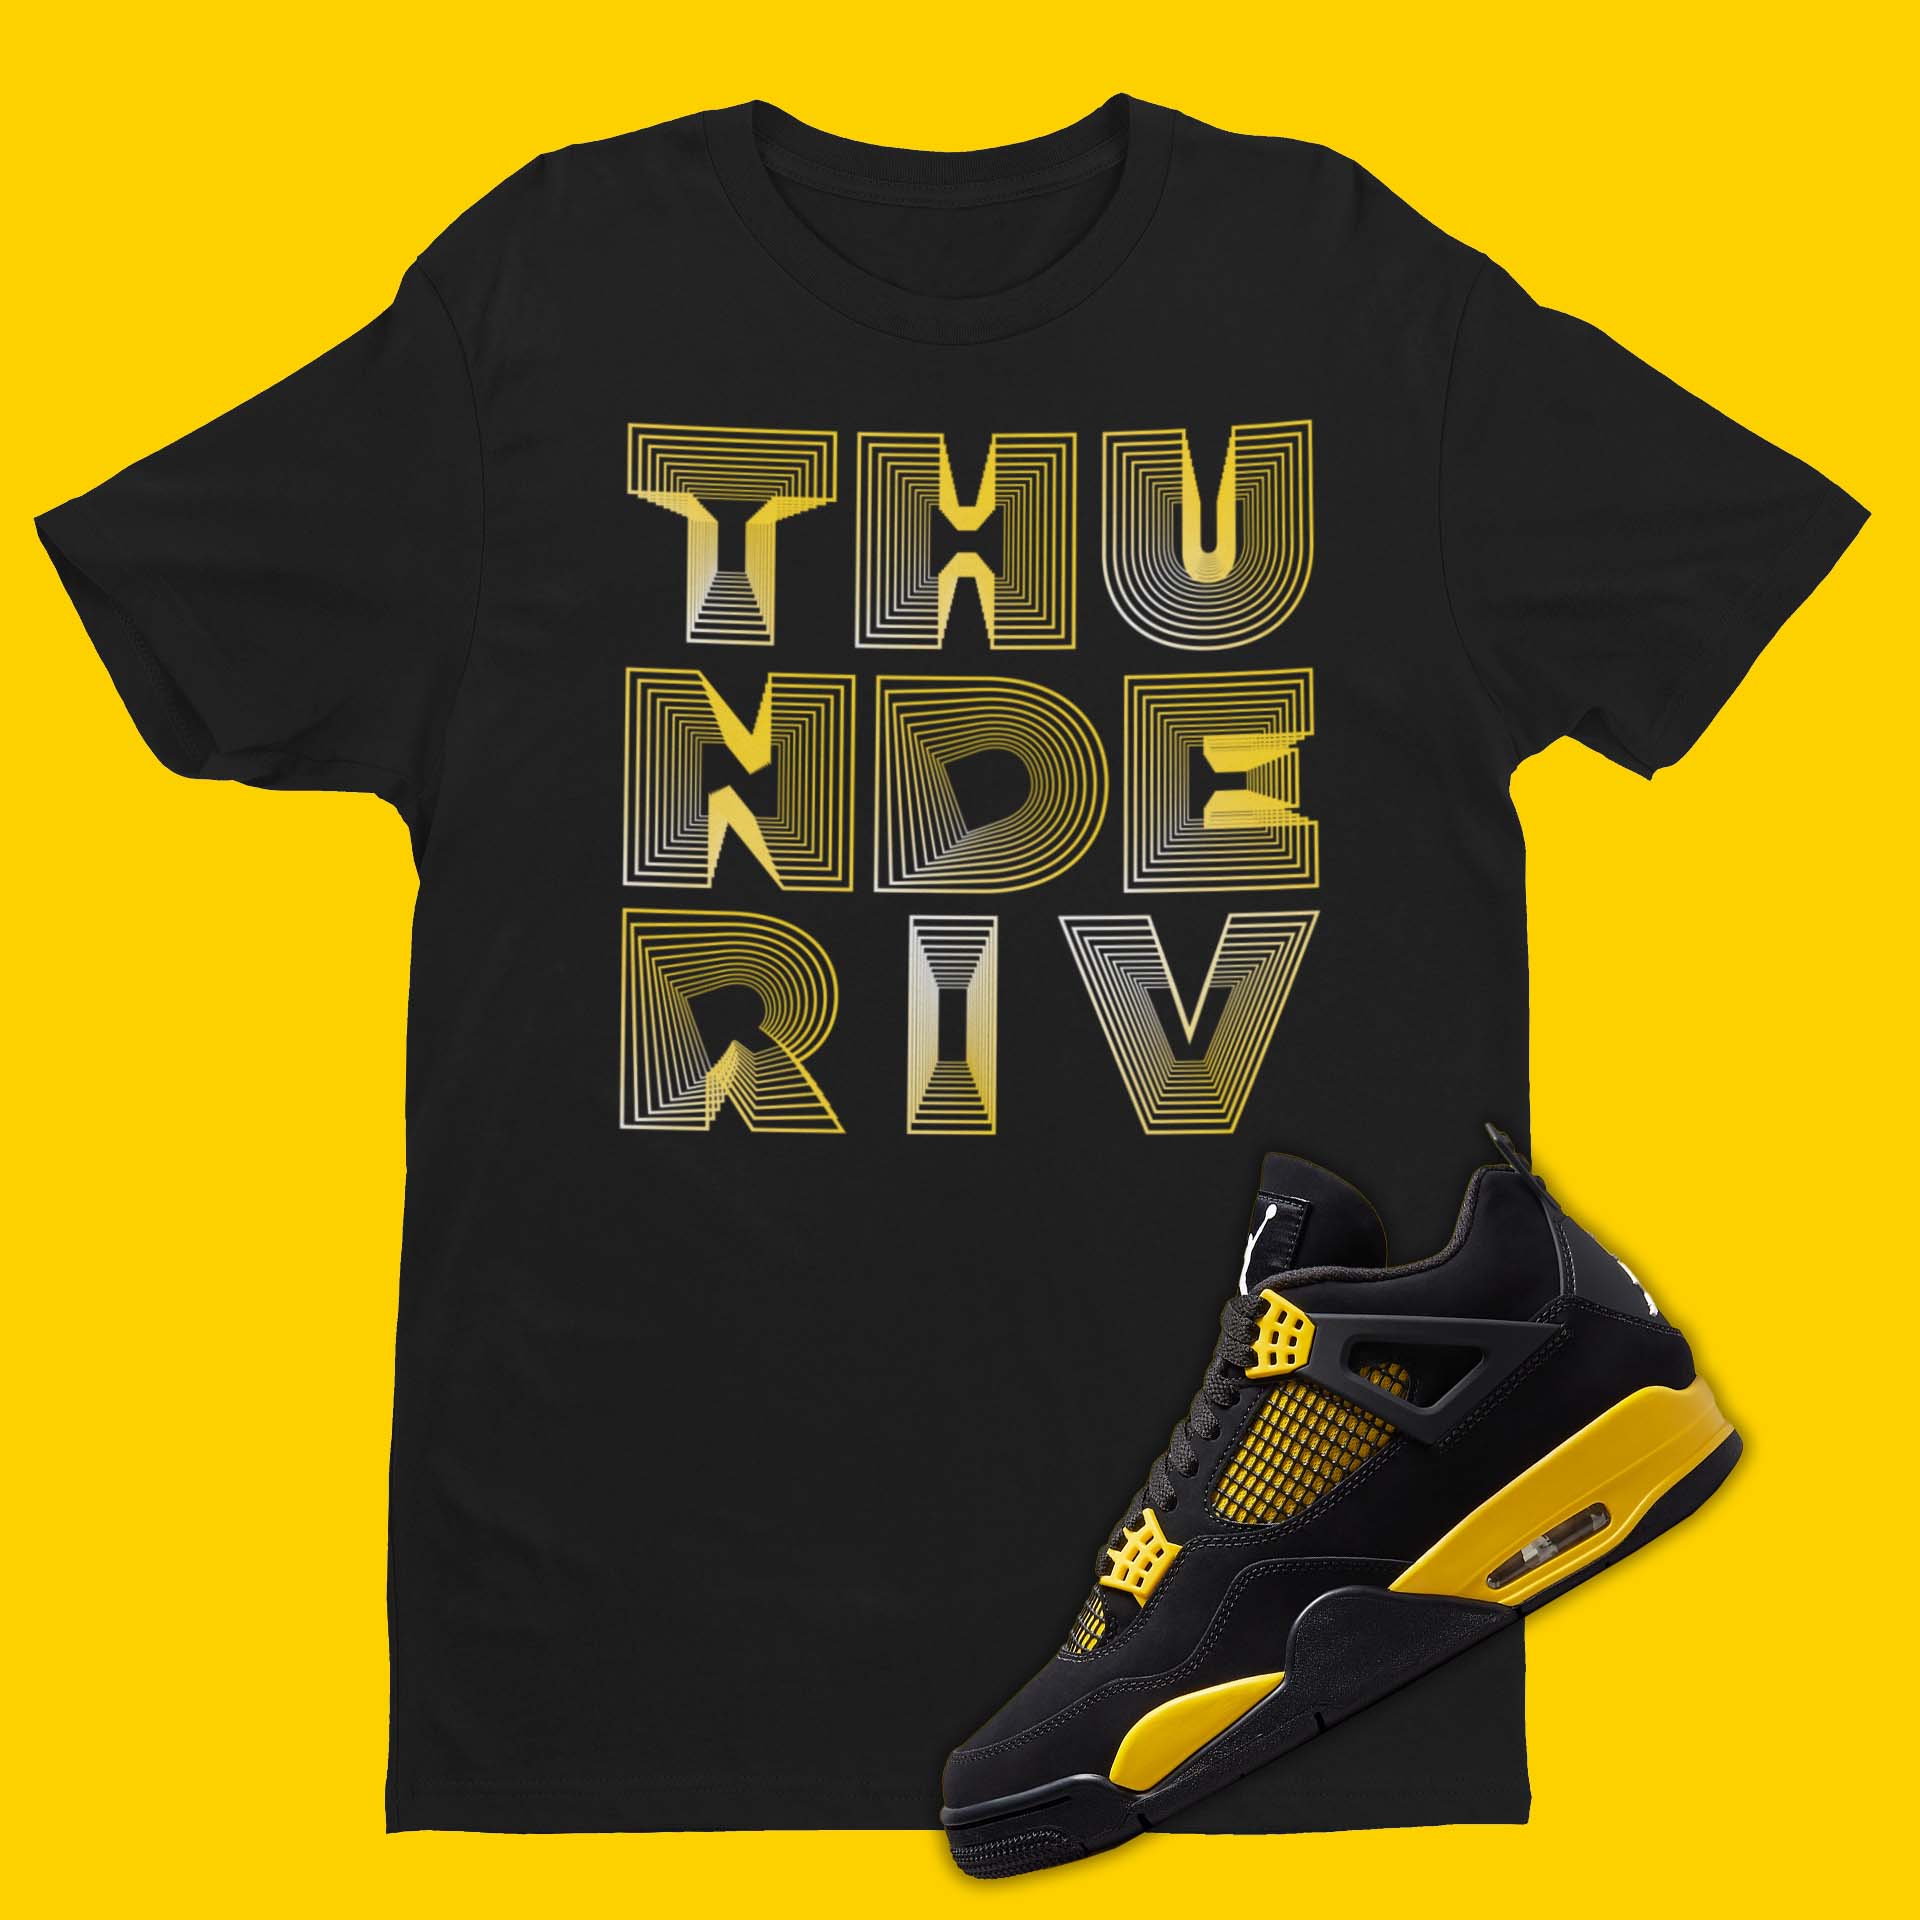 Thunder IV 3D crew neck black t-shirt with 'Thunder IV' design inspired by Air Jordan 4 Thunder sneakers.